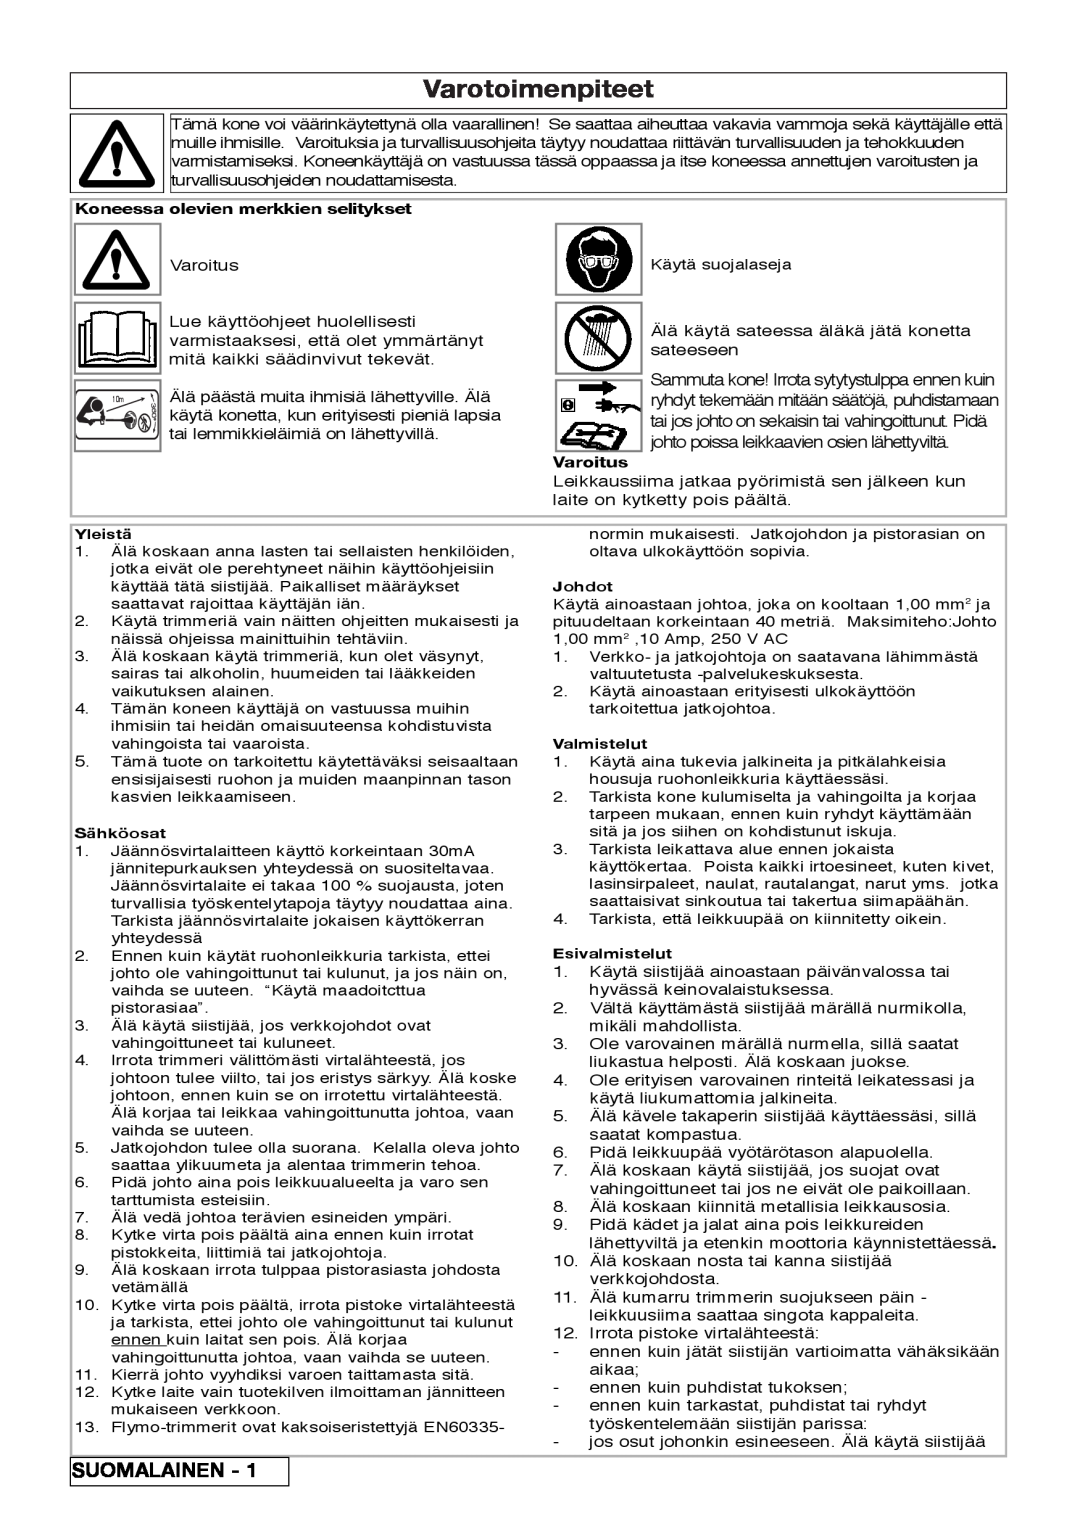 Flymo 800/1000 manual Varotoimenpiteet, Suomalainen, Koneessa olevien merkkien selitykset, Varoitus 